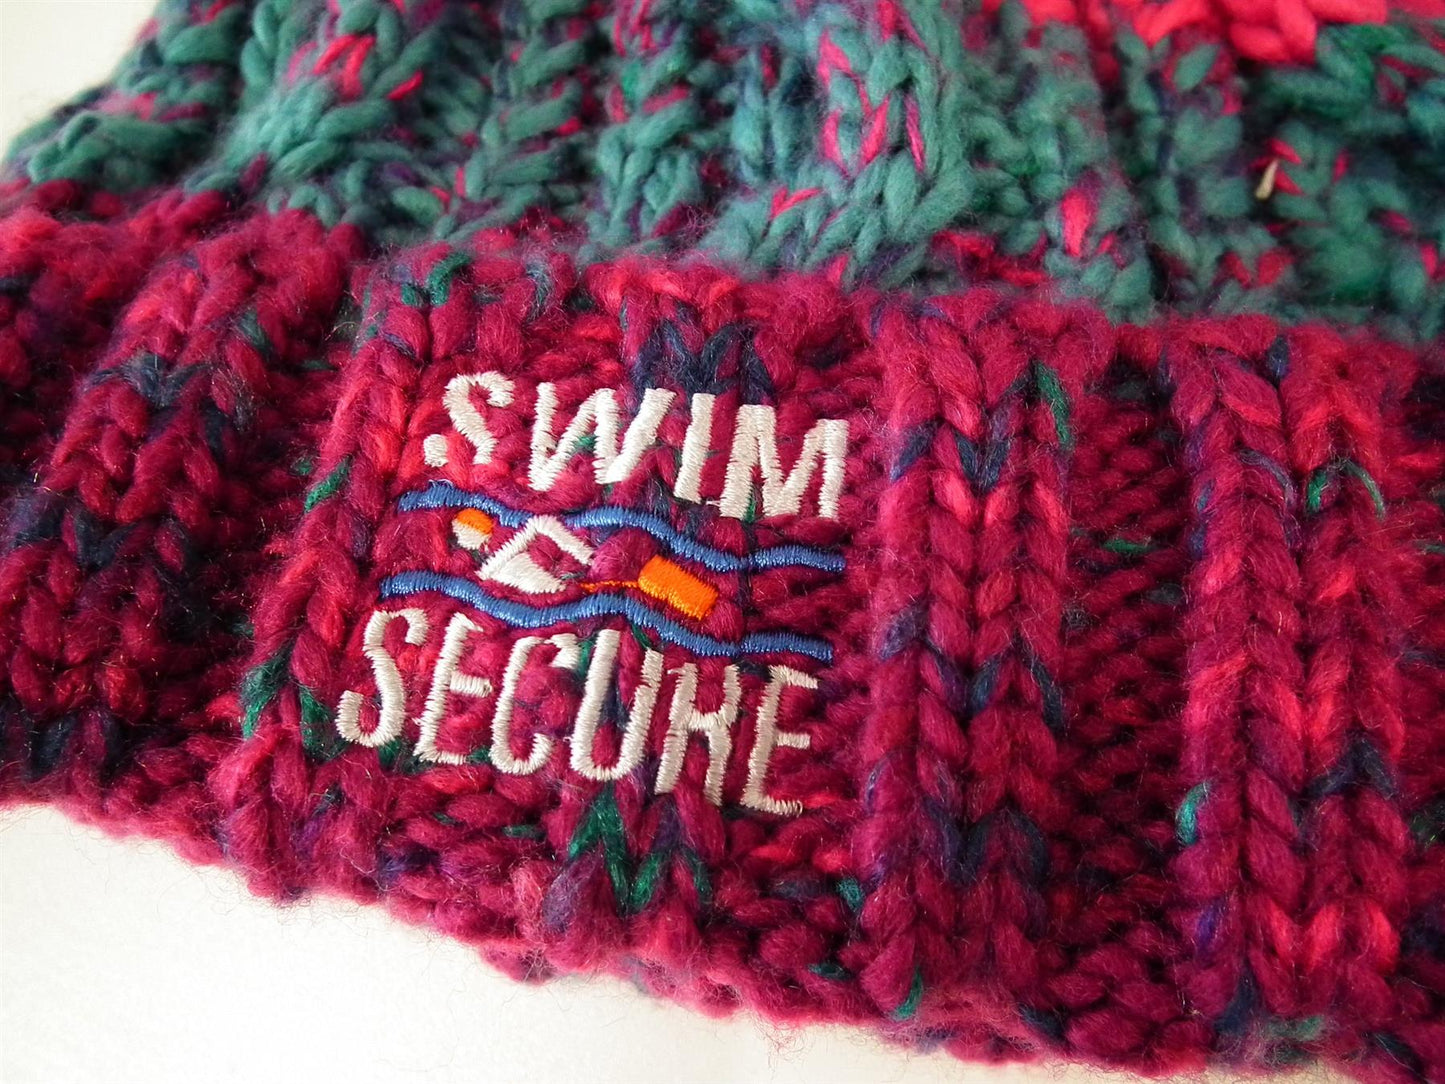 Swim Secure Bobble Hat